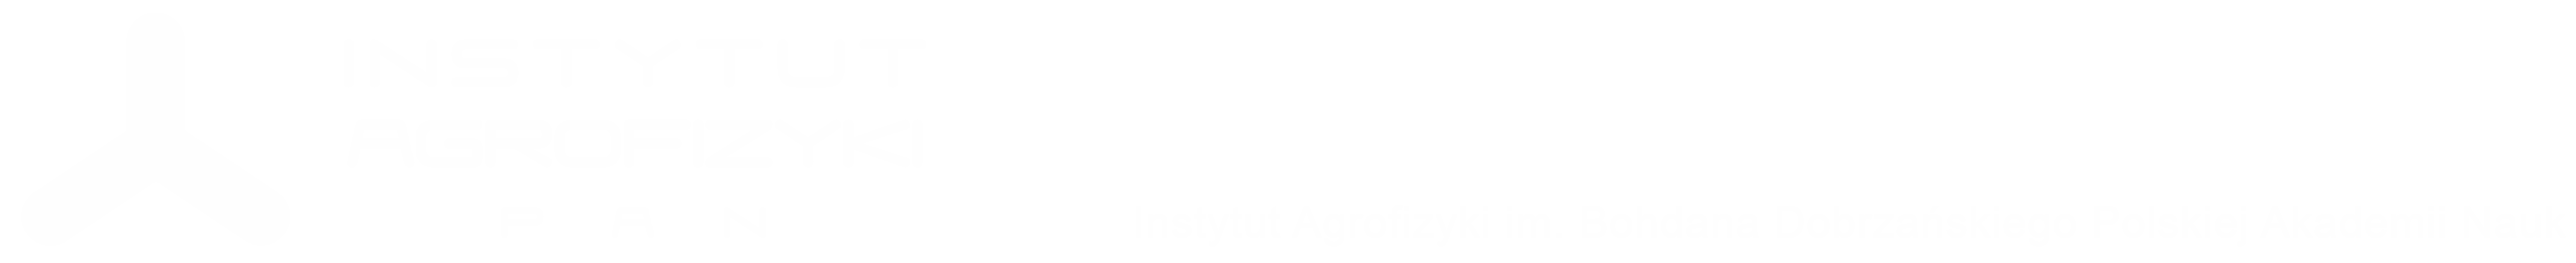 Instytut Agrofizyki Polskiej Akademii Nauk im. Bohdana Dobrzańskiego